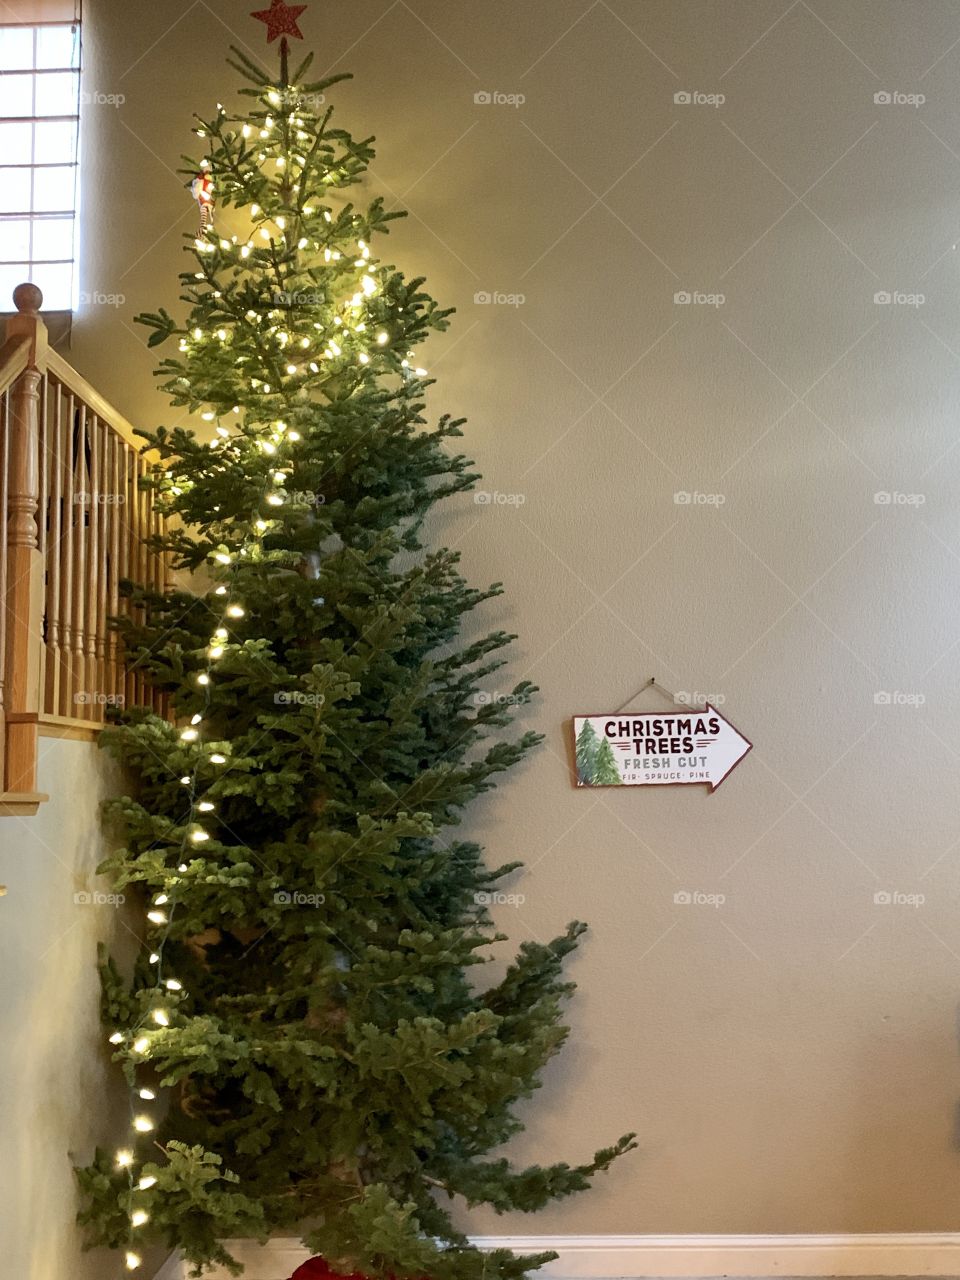 Christmas tree with lights - decorating for Christmas USA, America 